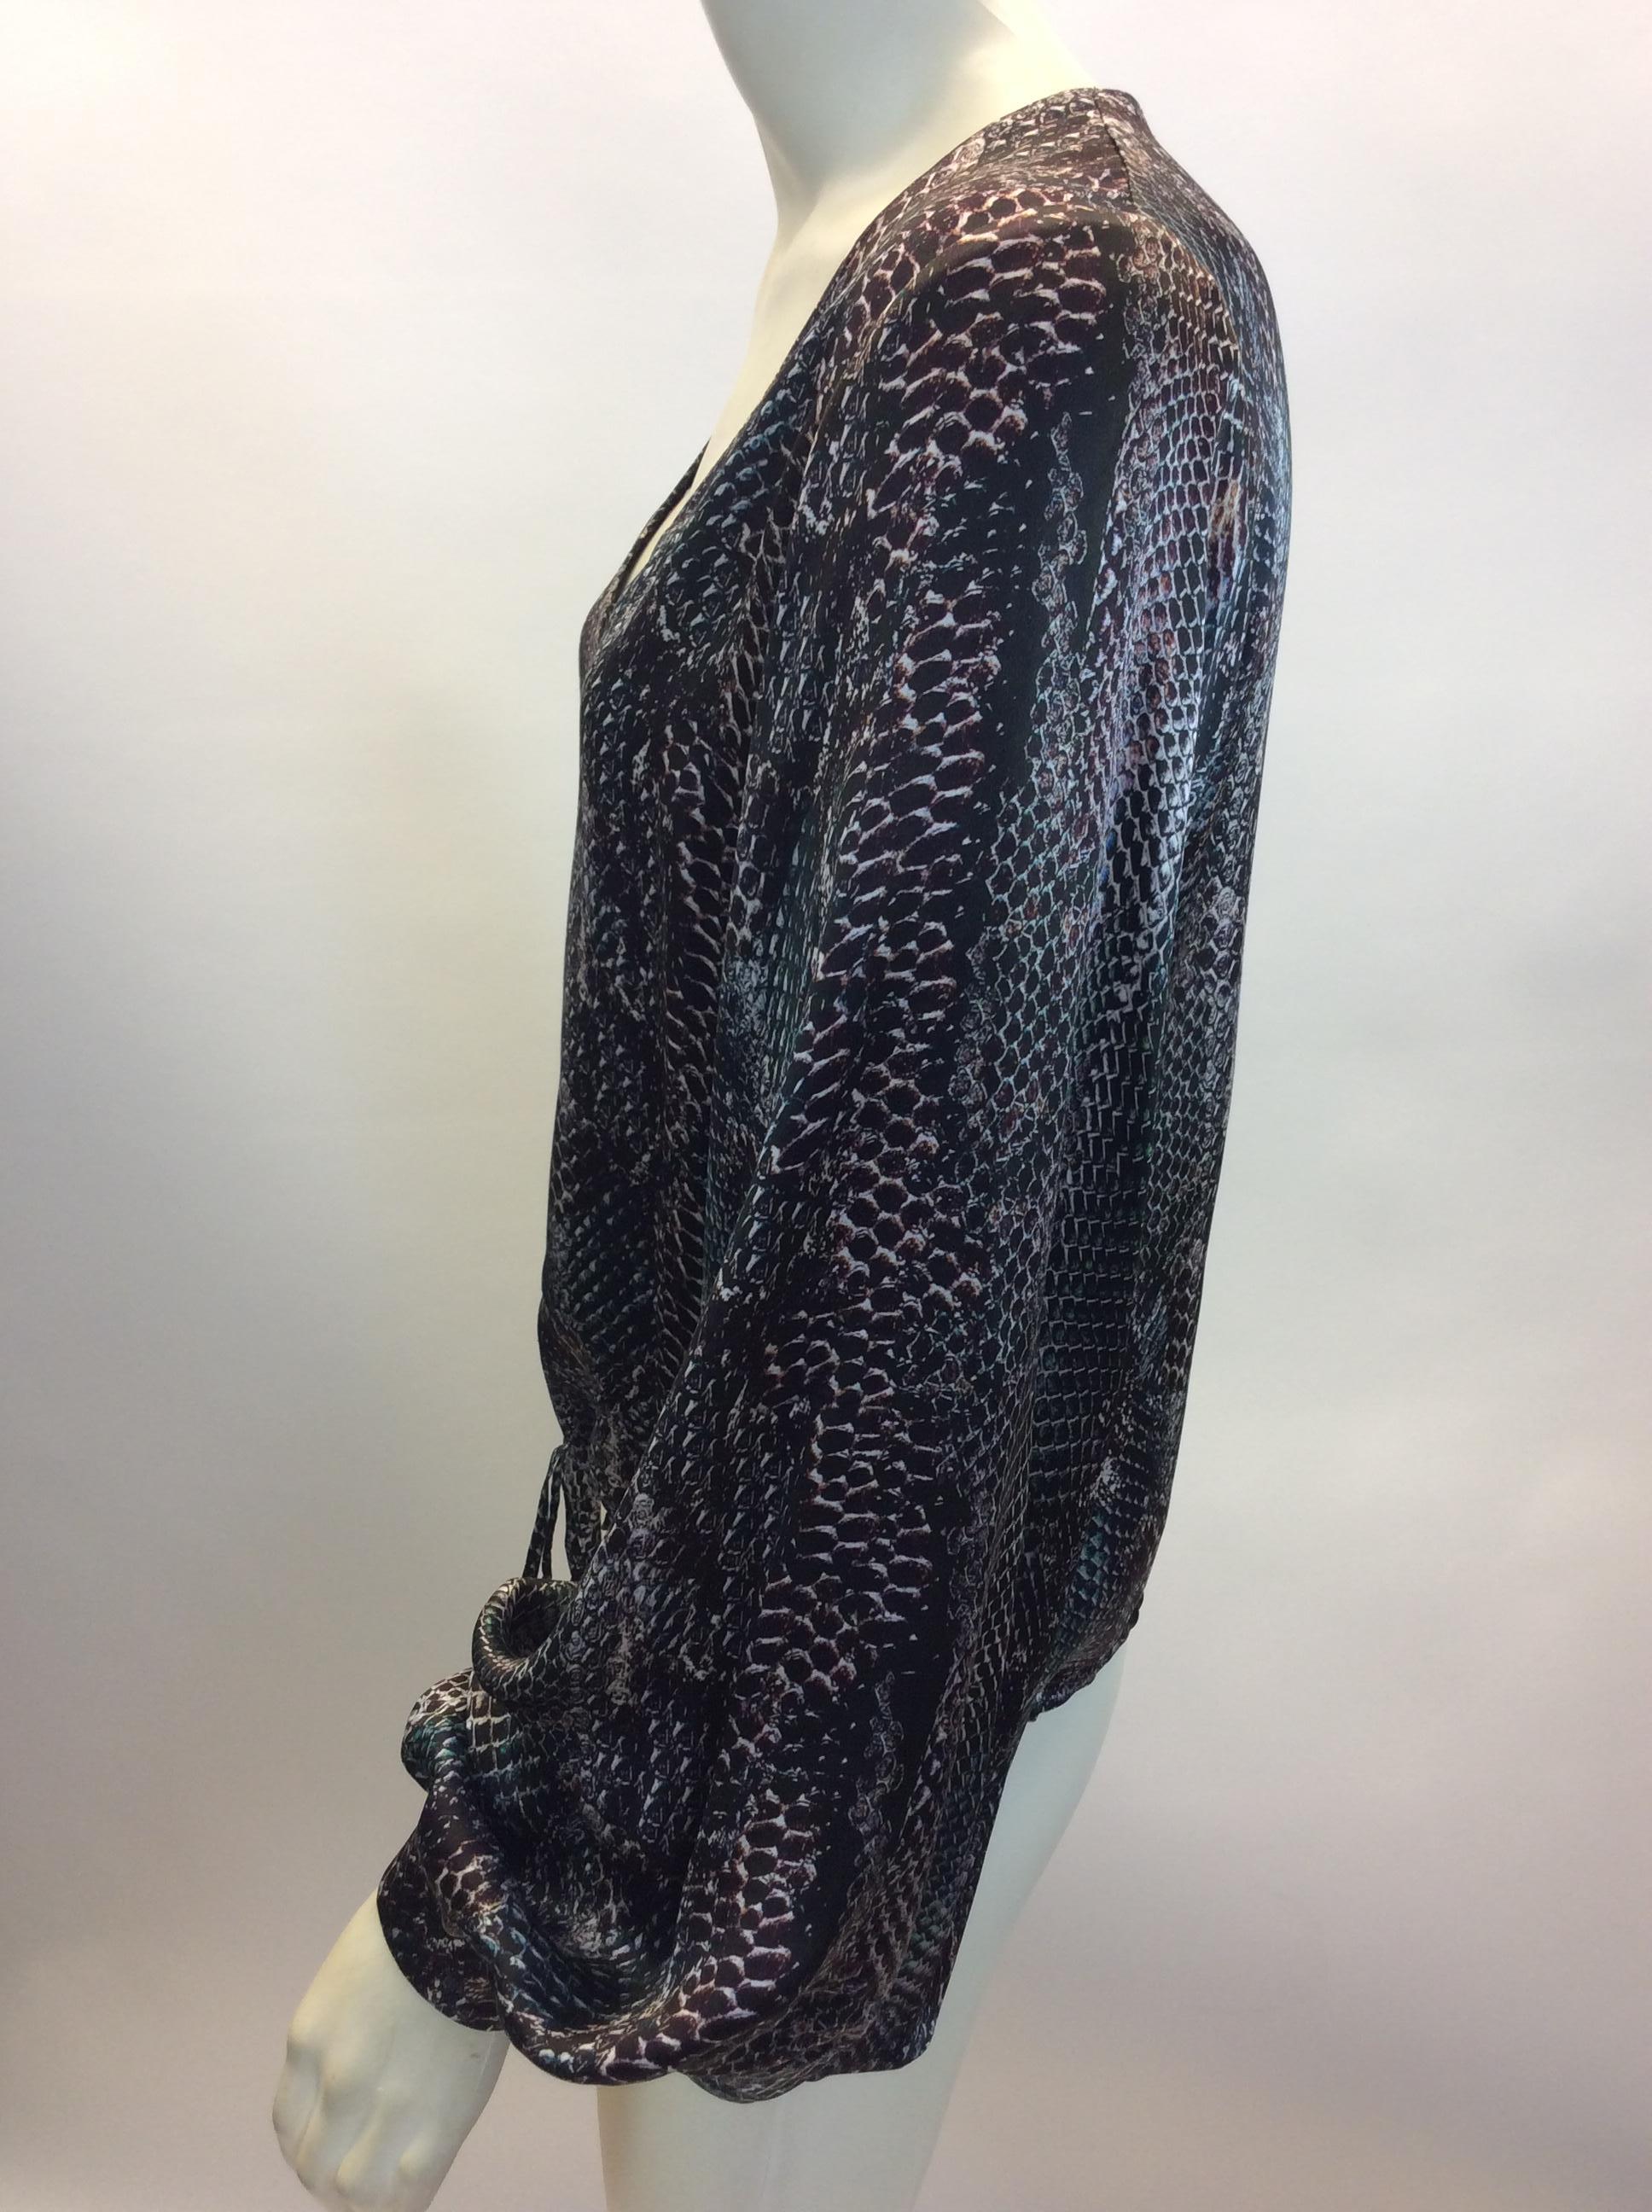 Yves Saint Laurent Snake Skin Print Silk Blouse
$165
Made in Italy
100% Silk
Size 36
Length 20.5